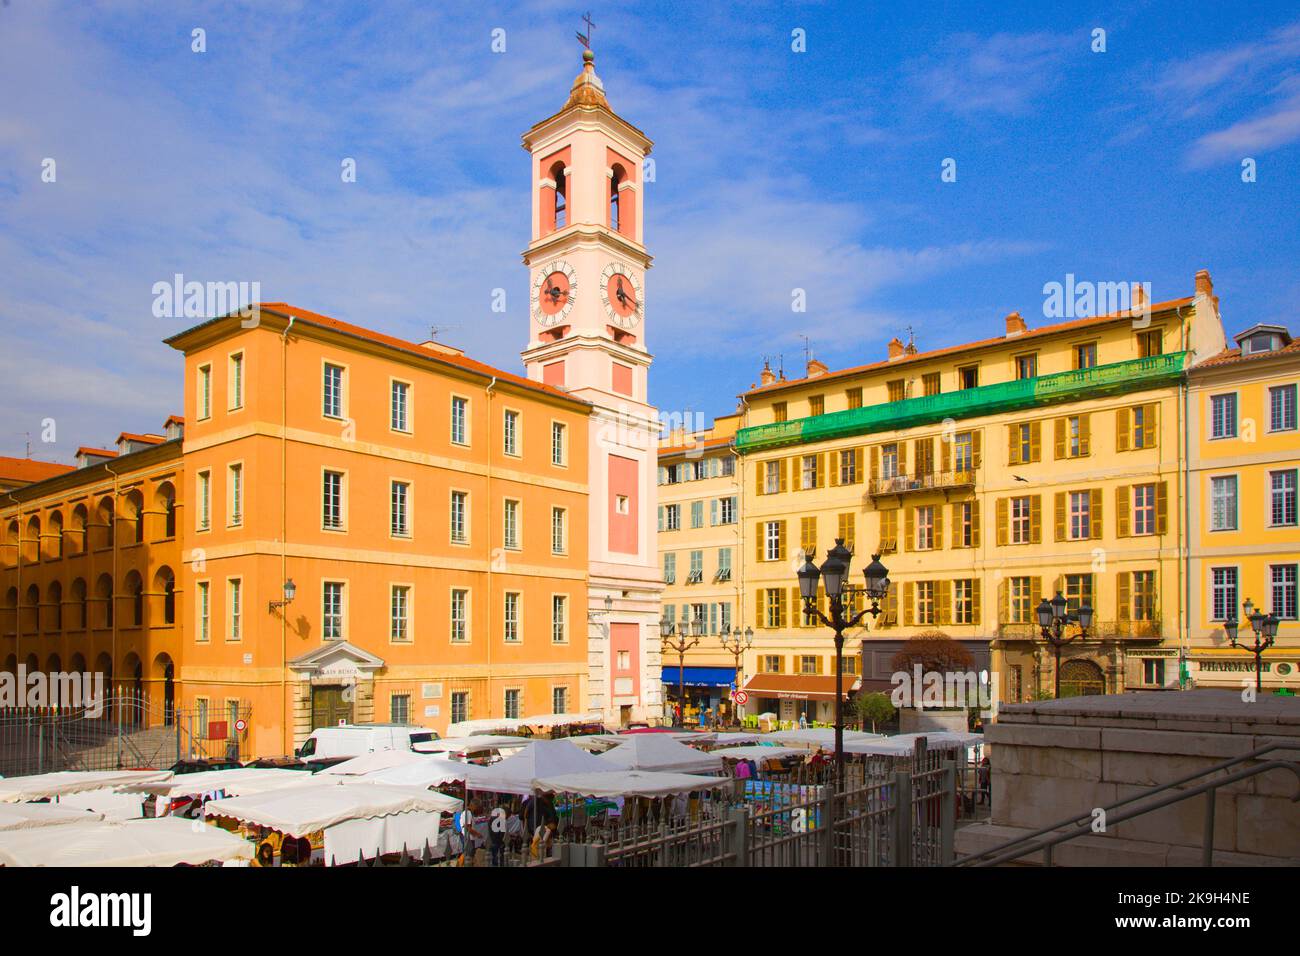 France, Cote d'Azur, Nice, Palais Rusca, clock tower, Place du Palais de Justice, Stock Photo